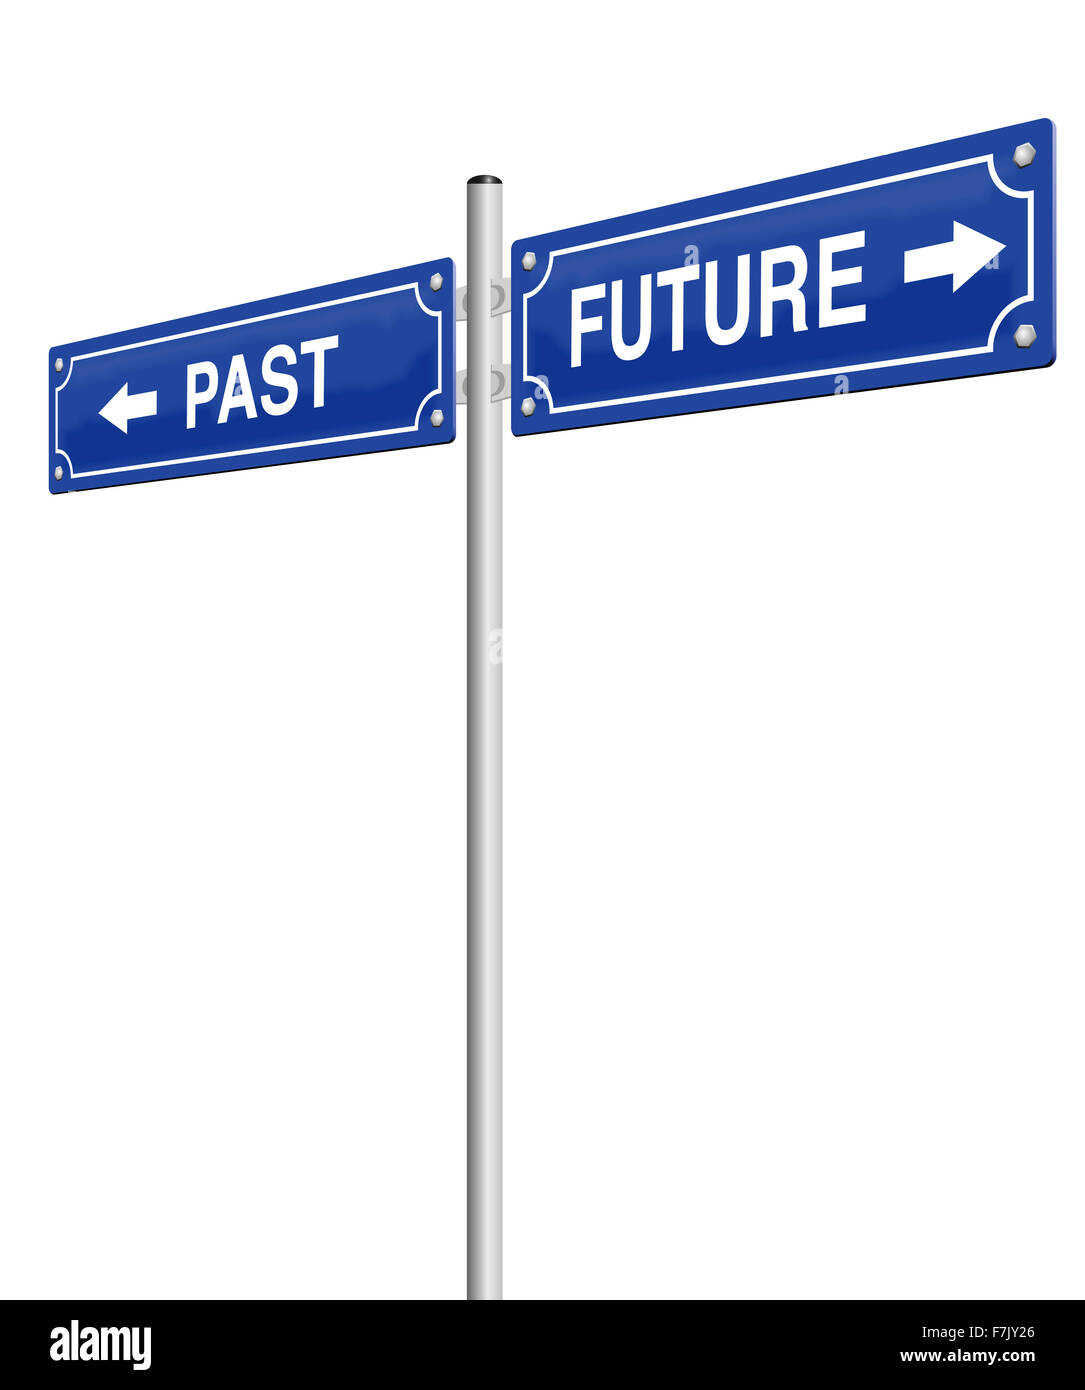 Passato e futuro, scritta su due cartelli stradali. Immagine su sfondo bianco. Foto Stock